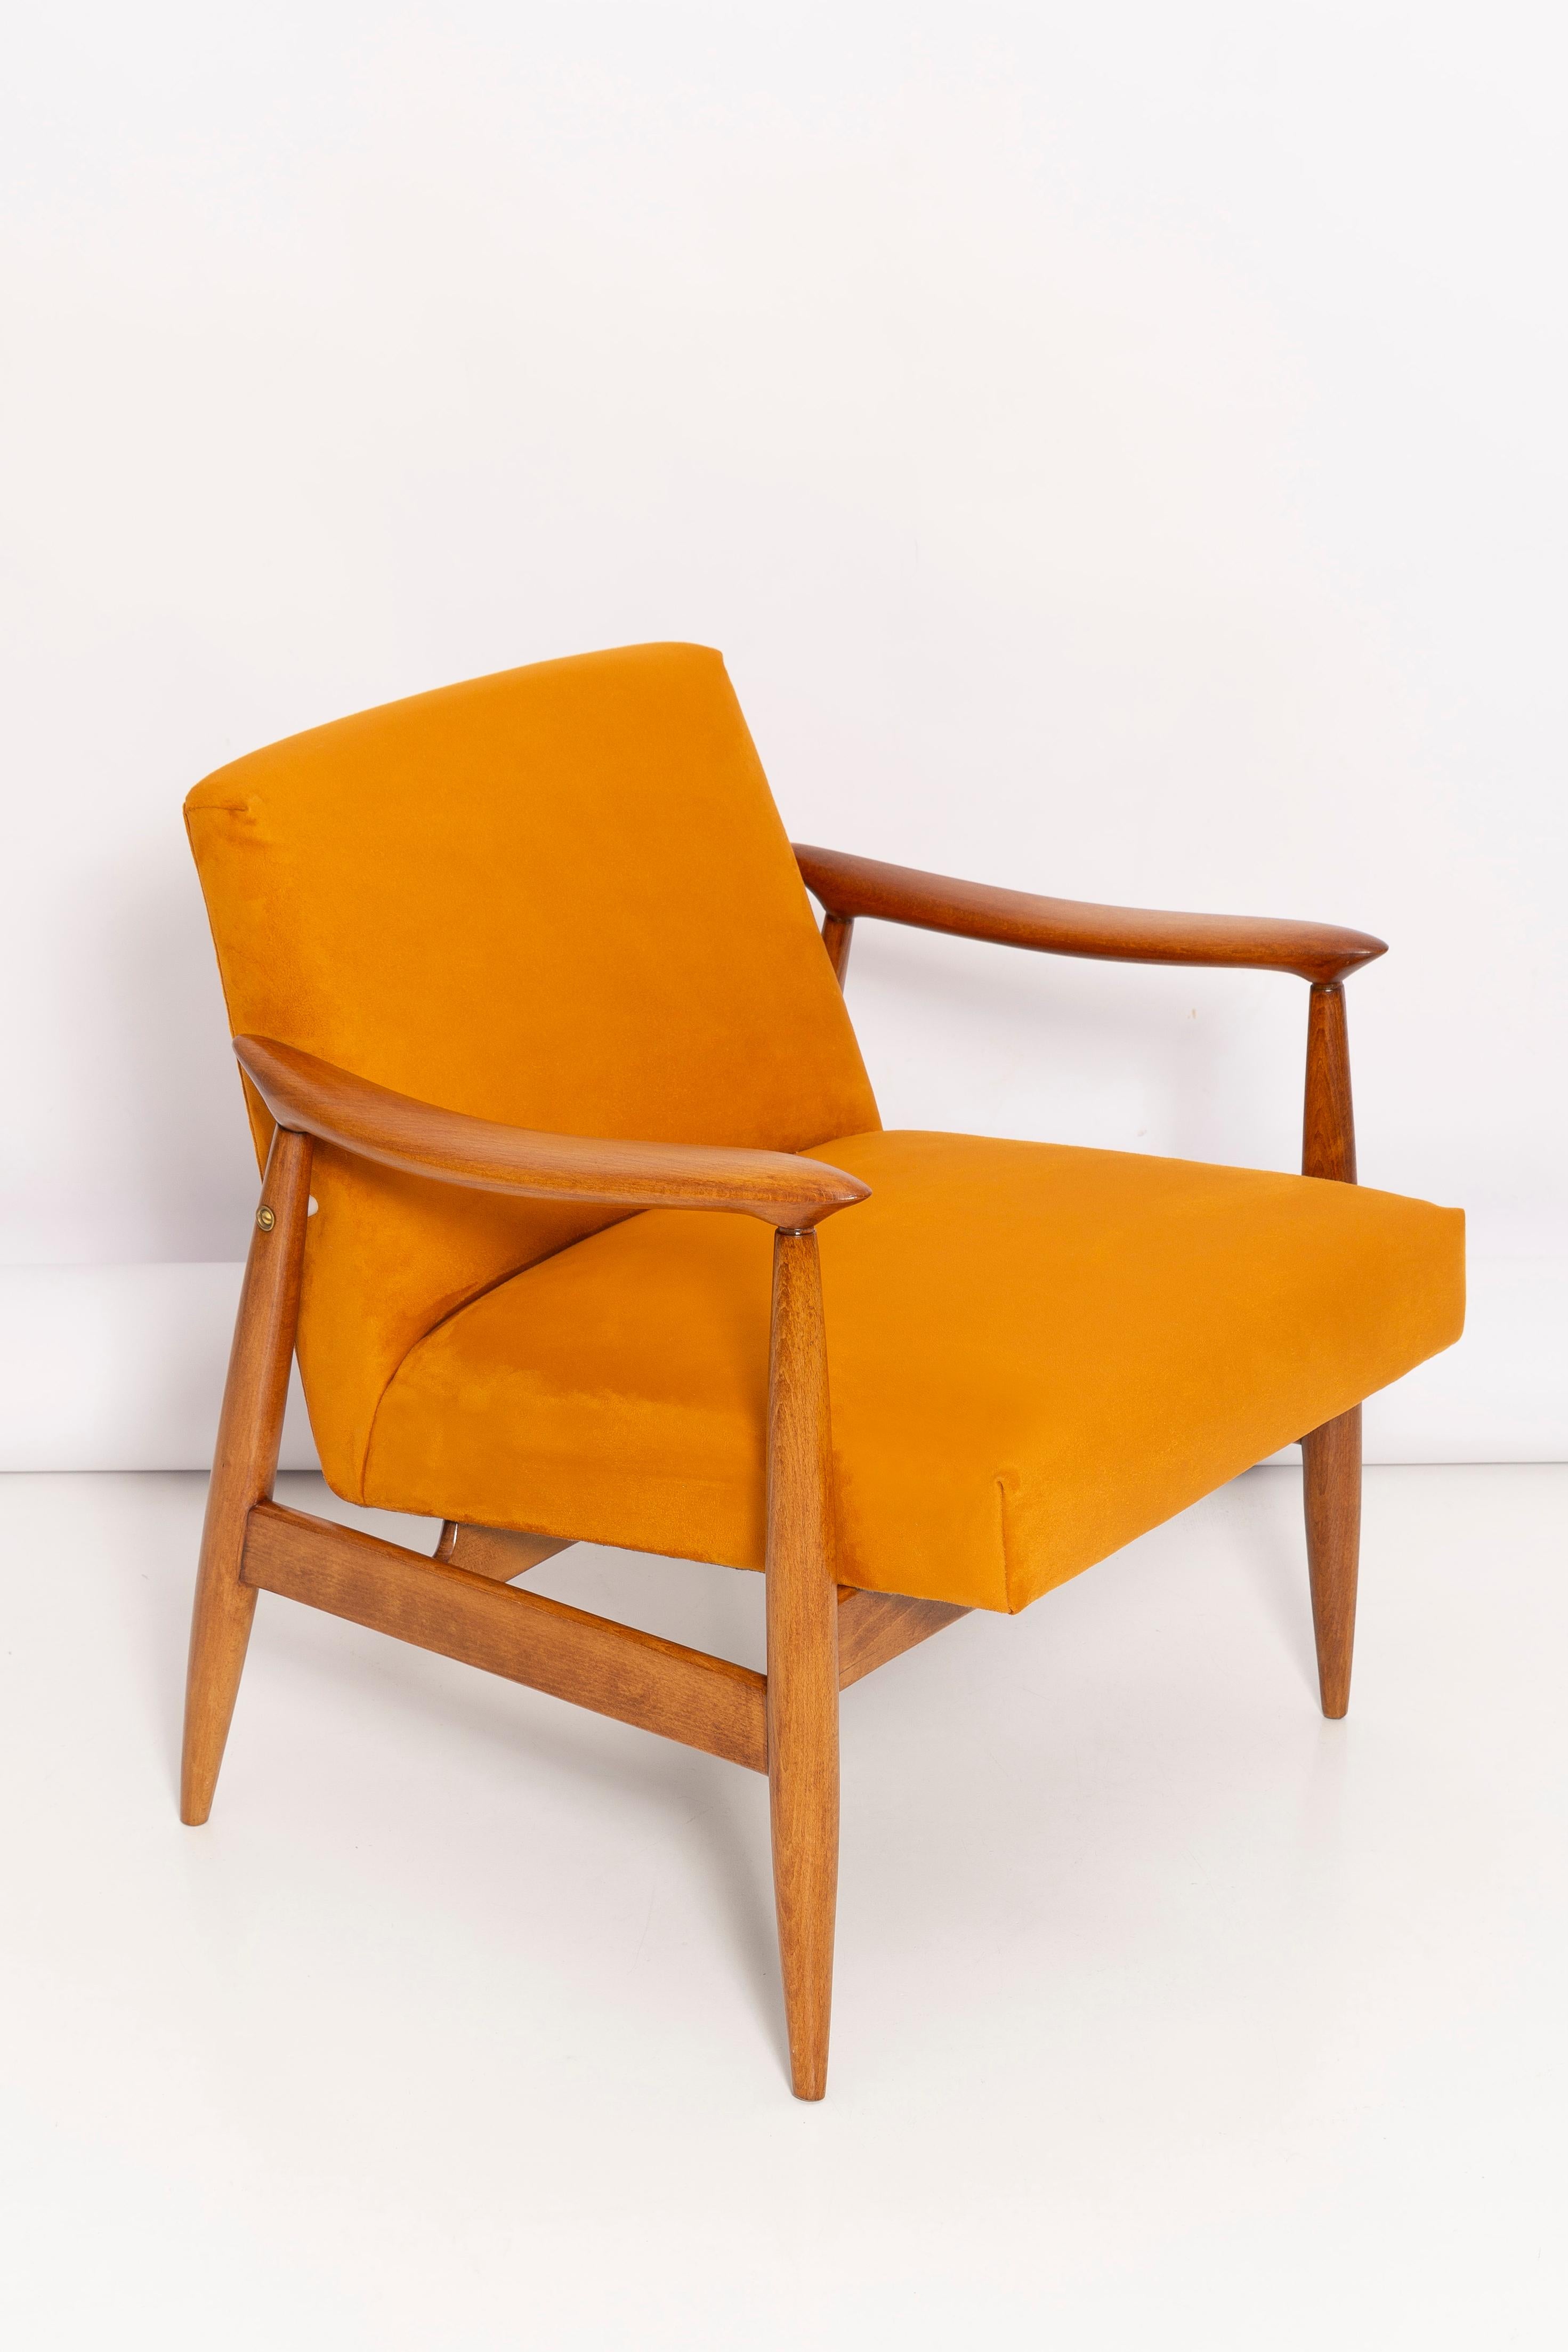 Der GFM-Sessel ist eine Ikone des polnischen Designs aus der PRL-Zeit.

Der berühmte Sessel wurde 1962 von dem polnischen Innenarchitekten und Möbeldesigner 
Edmund Homa. Produziert in der Niederschlesischen Möbelfabrik in Swiebodzice.

Der